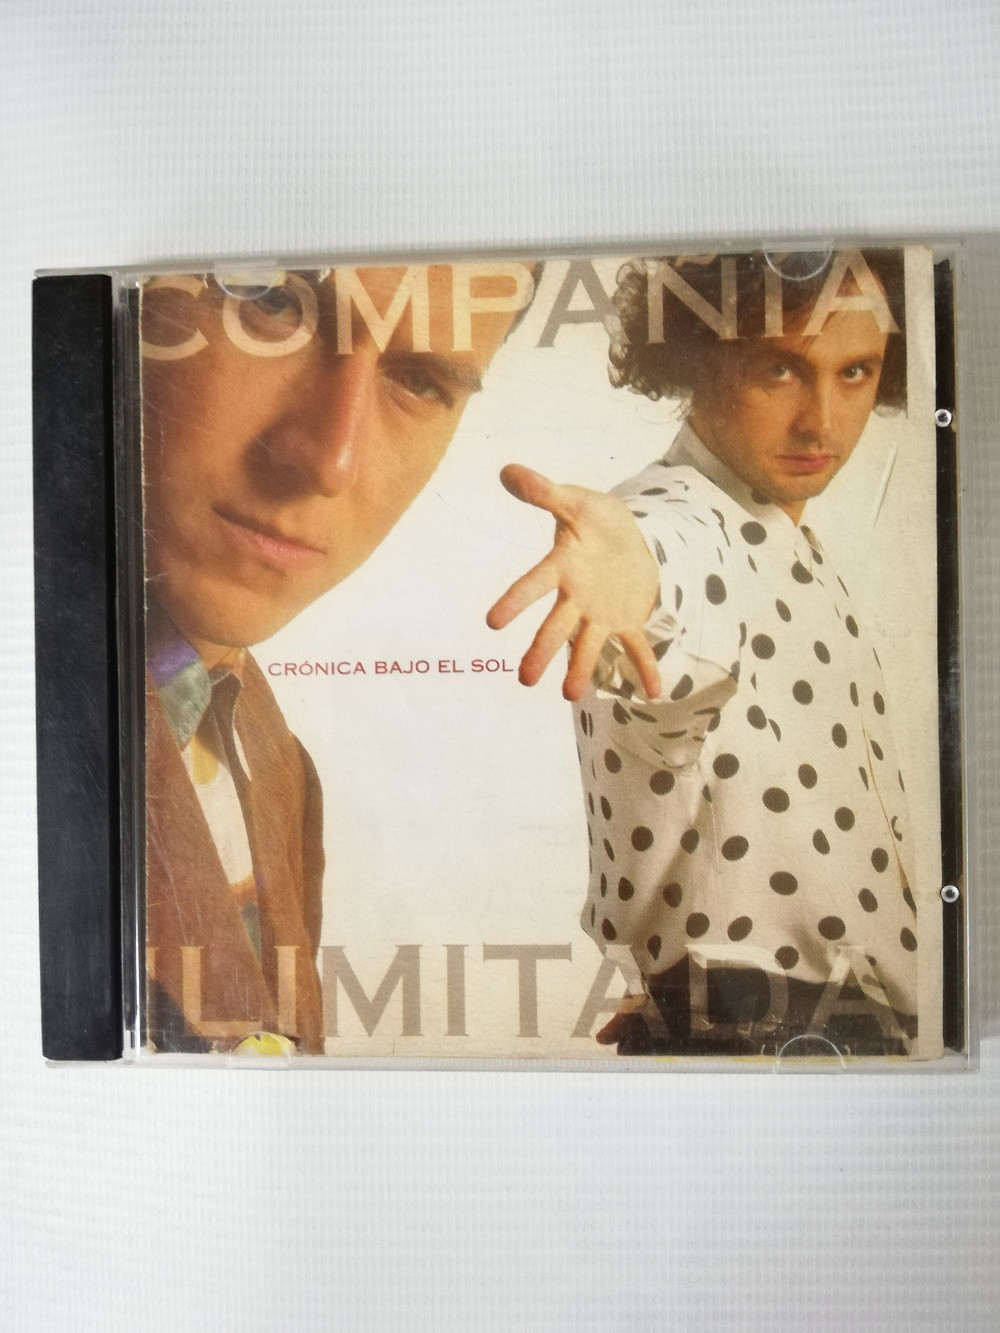 Imagen CD COMPAÑIA ILIMITADA - CRÓNICA BAJO EL SOL 1